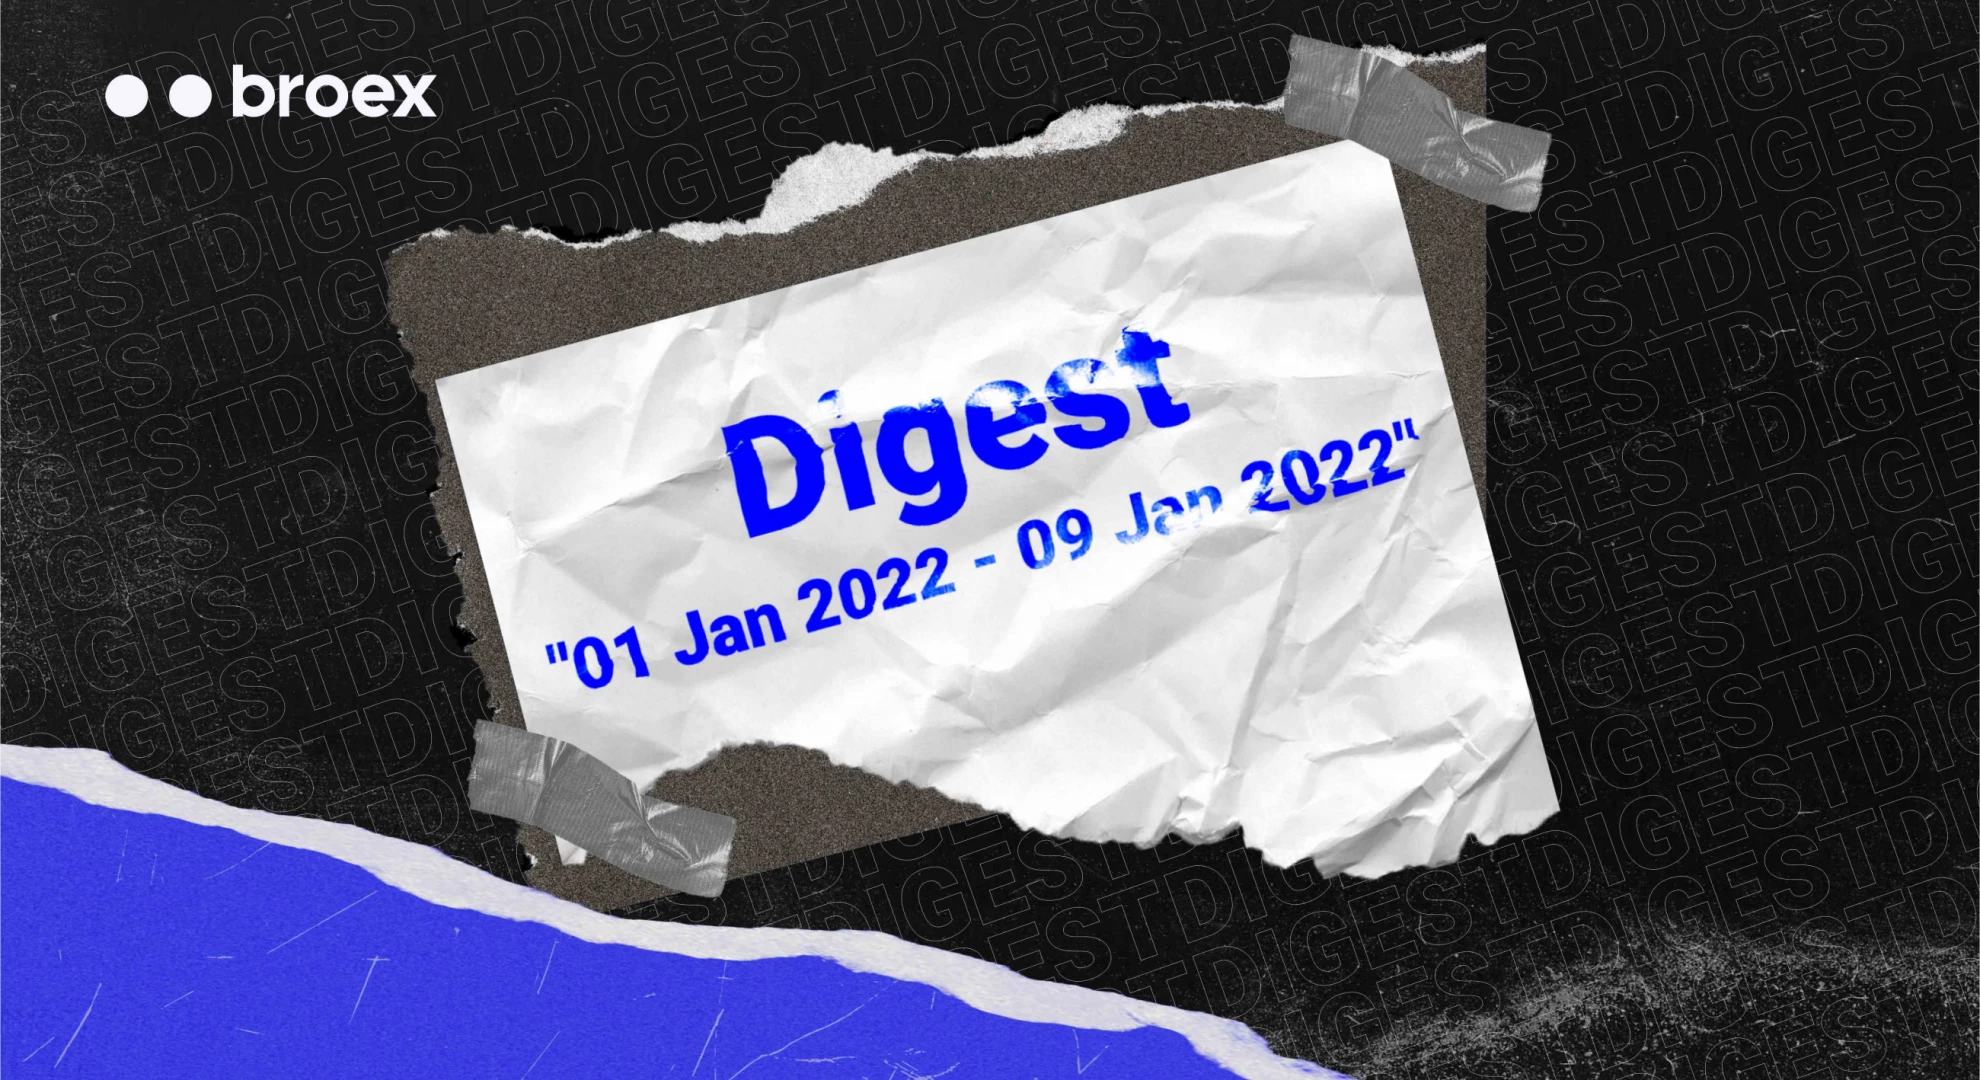 Digest (01 Jan 2022 - 9 Jan 2022)